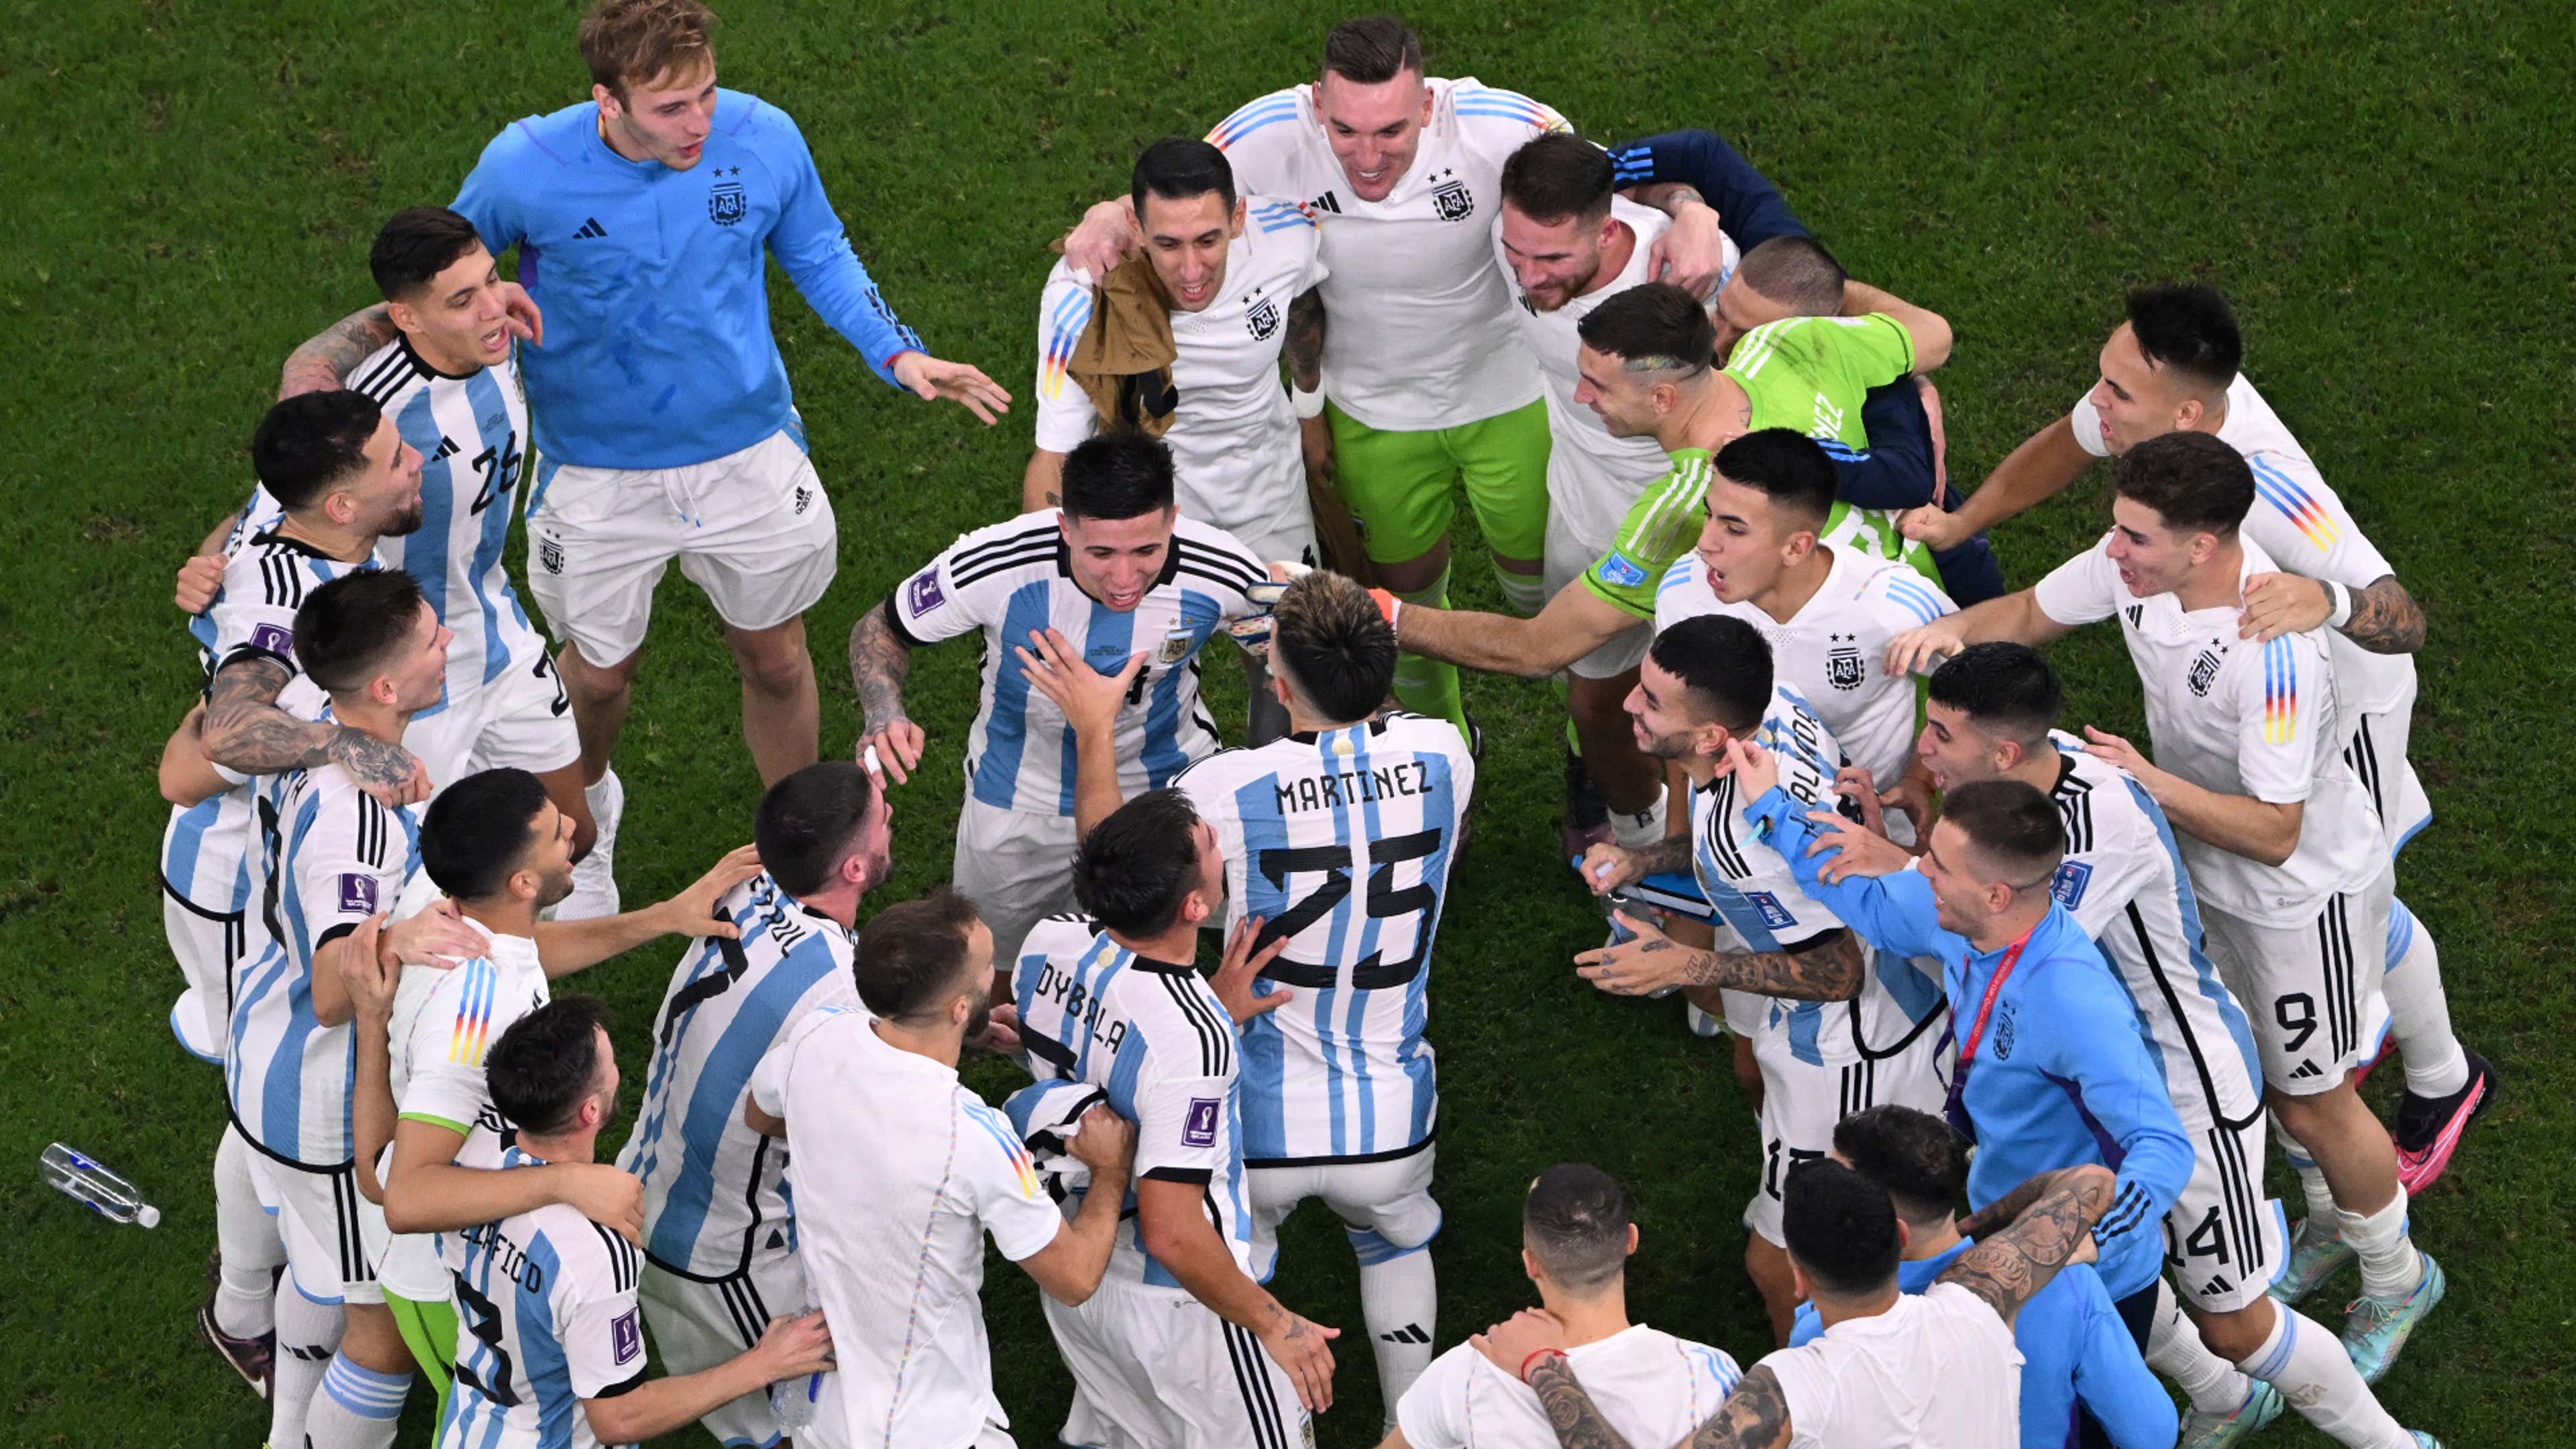 Argentina celebrate Croatia World Cup 2022